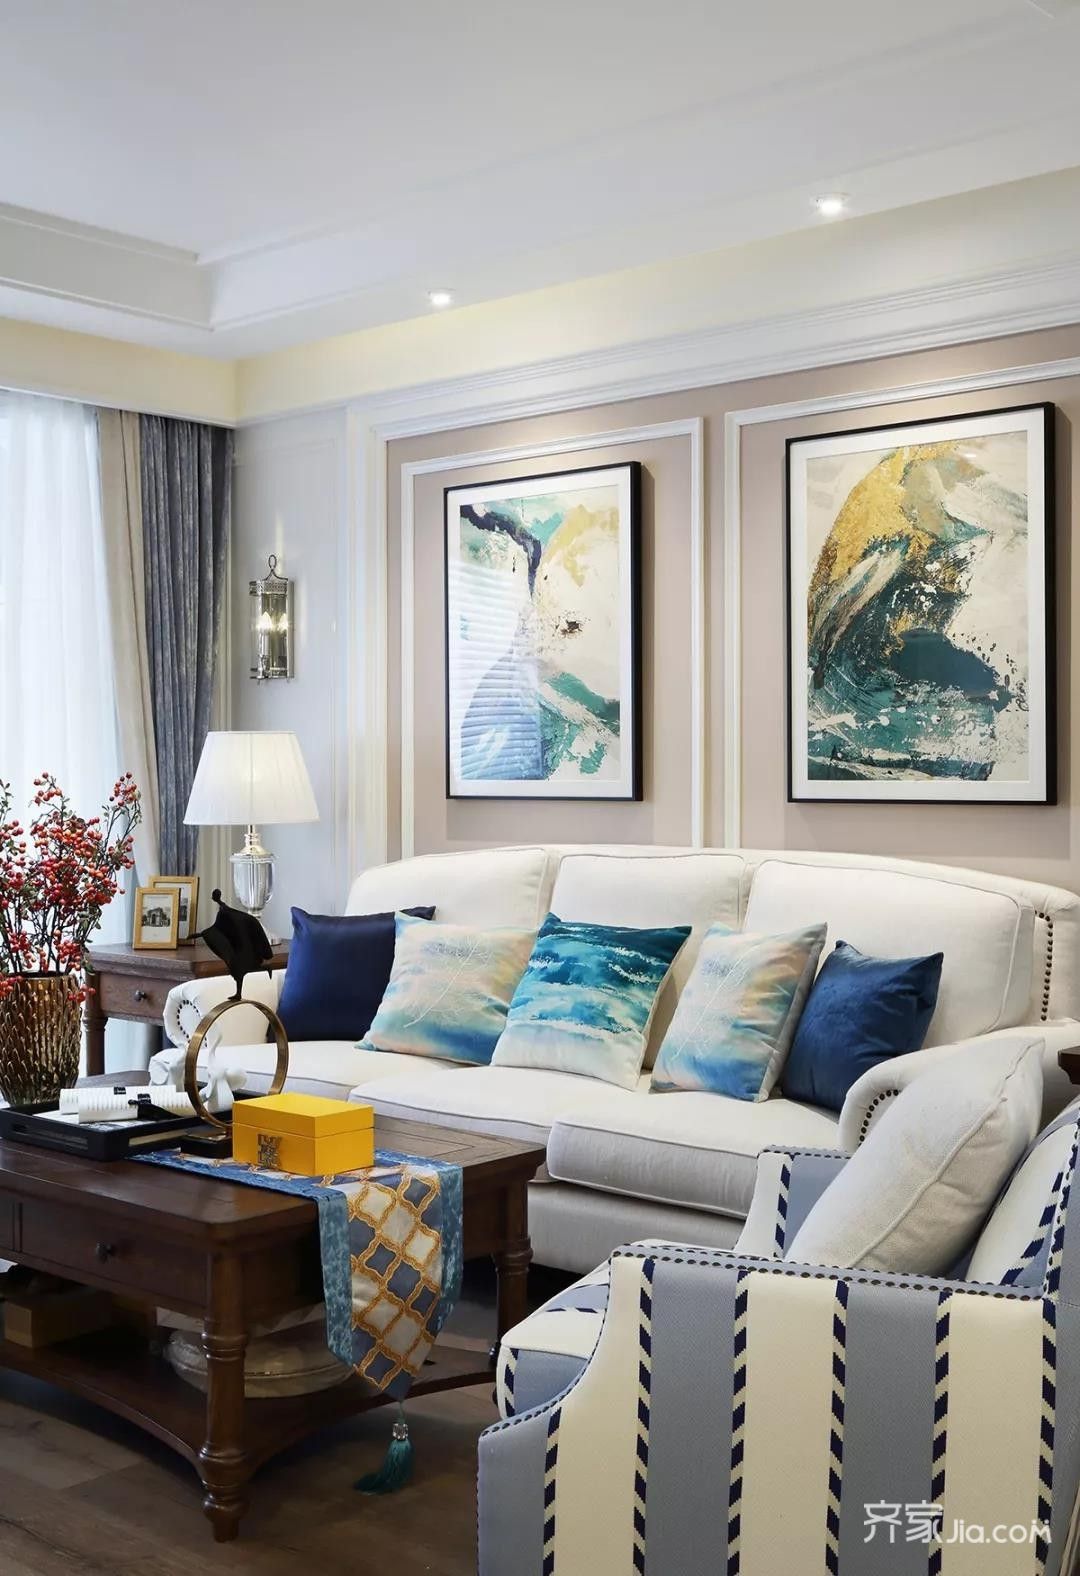 整个客厅以现代优雅的空间,搭配上舒适惬意的轻美式家具与软装